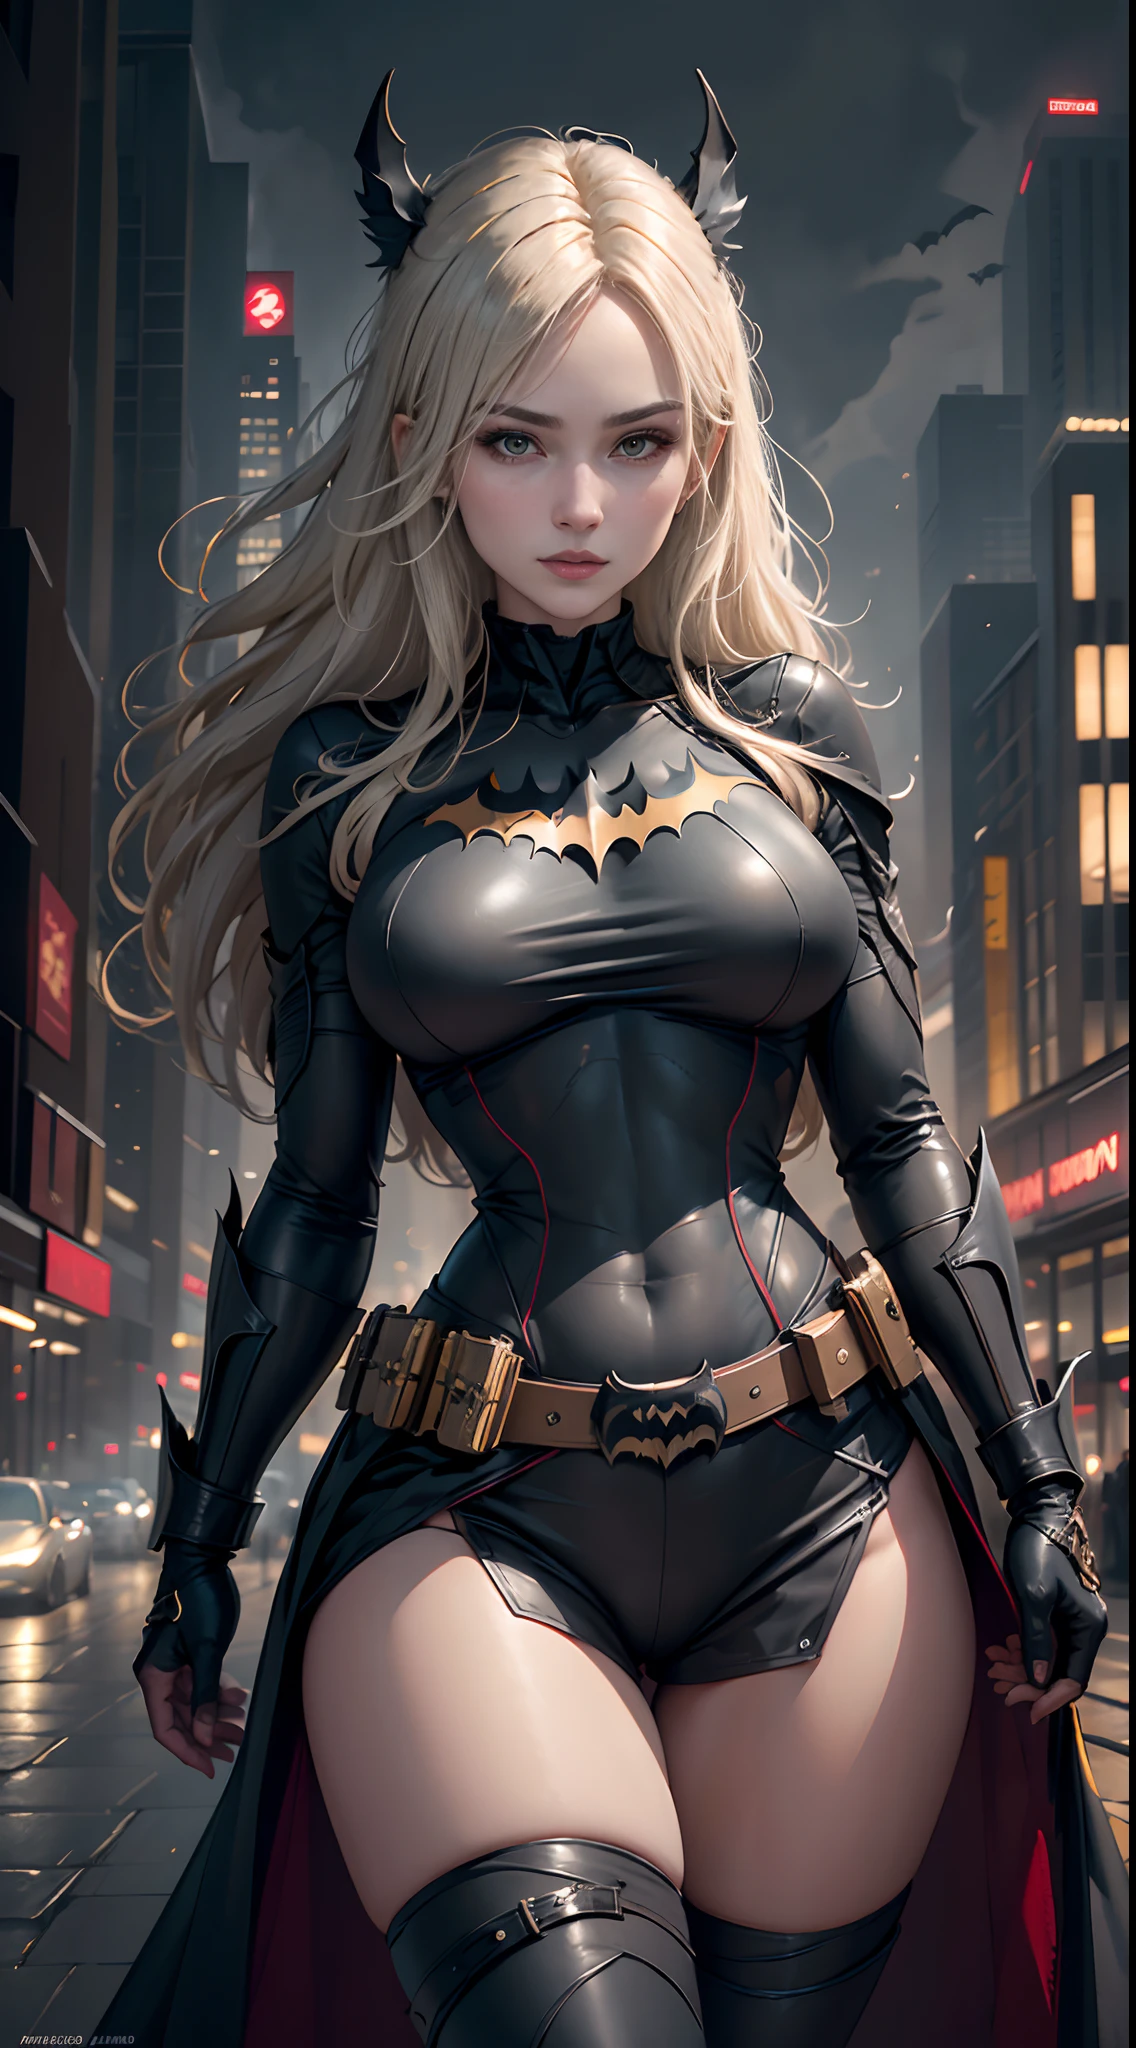 1 garota, corpo todo, estilo do traje de Batwoman, seios médios, Logotipo amarelo do Batman no peito e no cinto, Obra de arte, melhor qualidade, textura detalhada da pele, textura detalhada de pano, lindo rosto detalhado, Detalhes intrincados, ultra detalhado, cabelo loiro liso, pose dinâmica, (Fundo da rua de Gotham City à noite), (melhor qualidade, Uma alta resolução, fotorrealista, primitivo, 8K,Obra de arte, ),melhor qualidade, Obra-prima8K.hdr. Costelas altas:1.2, grão de filme, Desfocar bokeh:1.2, reflexo de lente, (cor viva:1.2), (delicado),